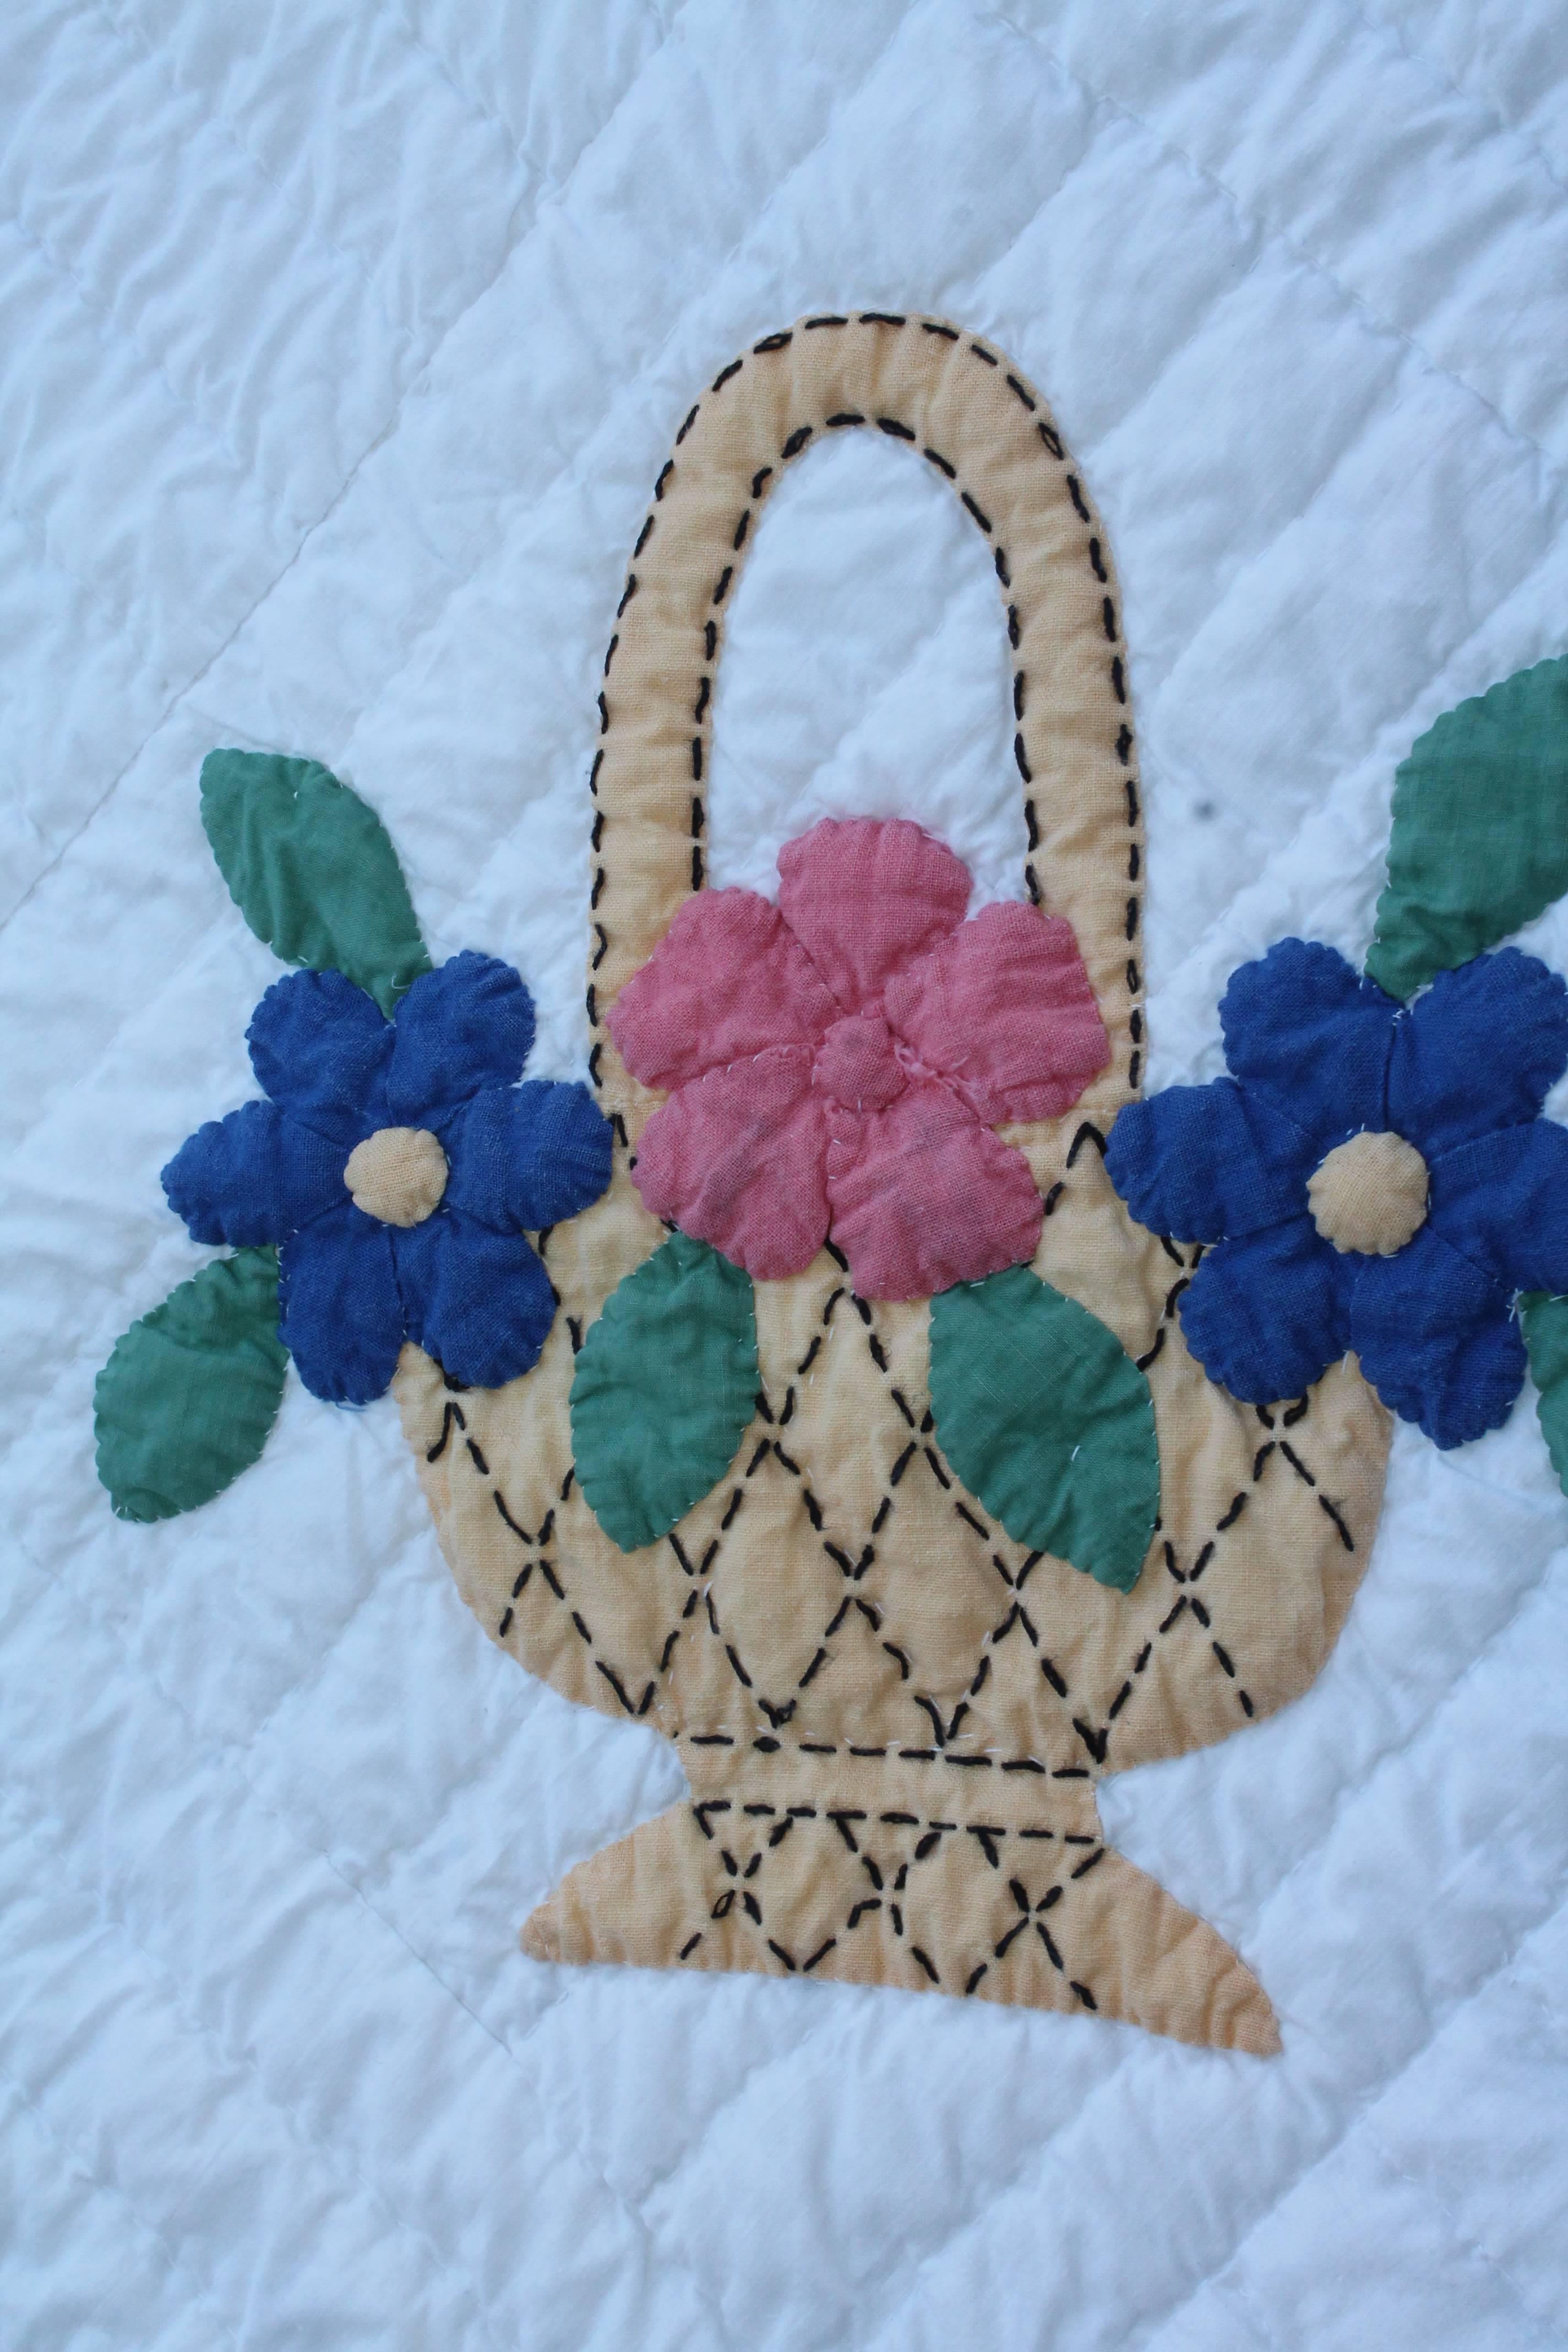 Appliqué Applique Flower Basket Quilt